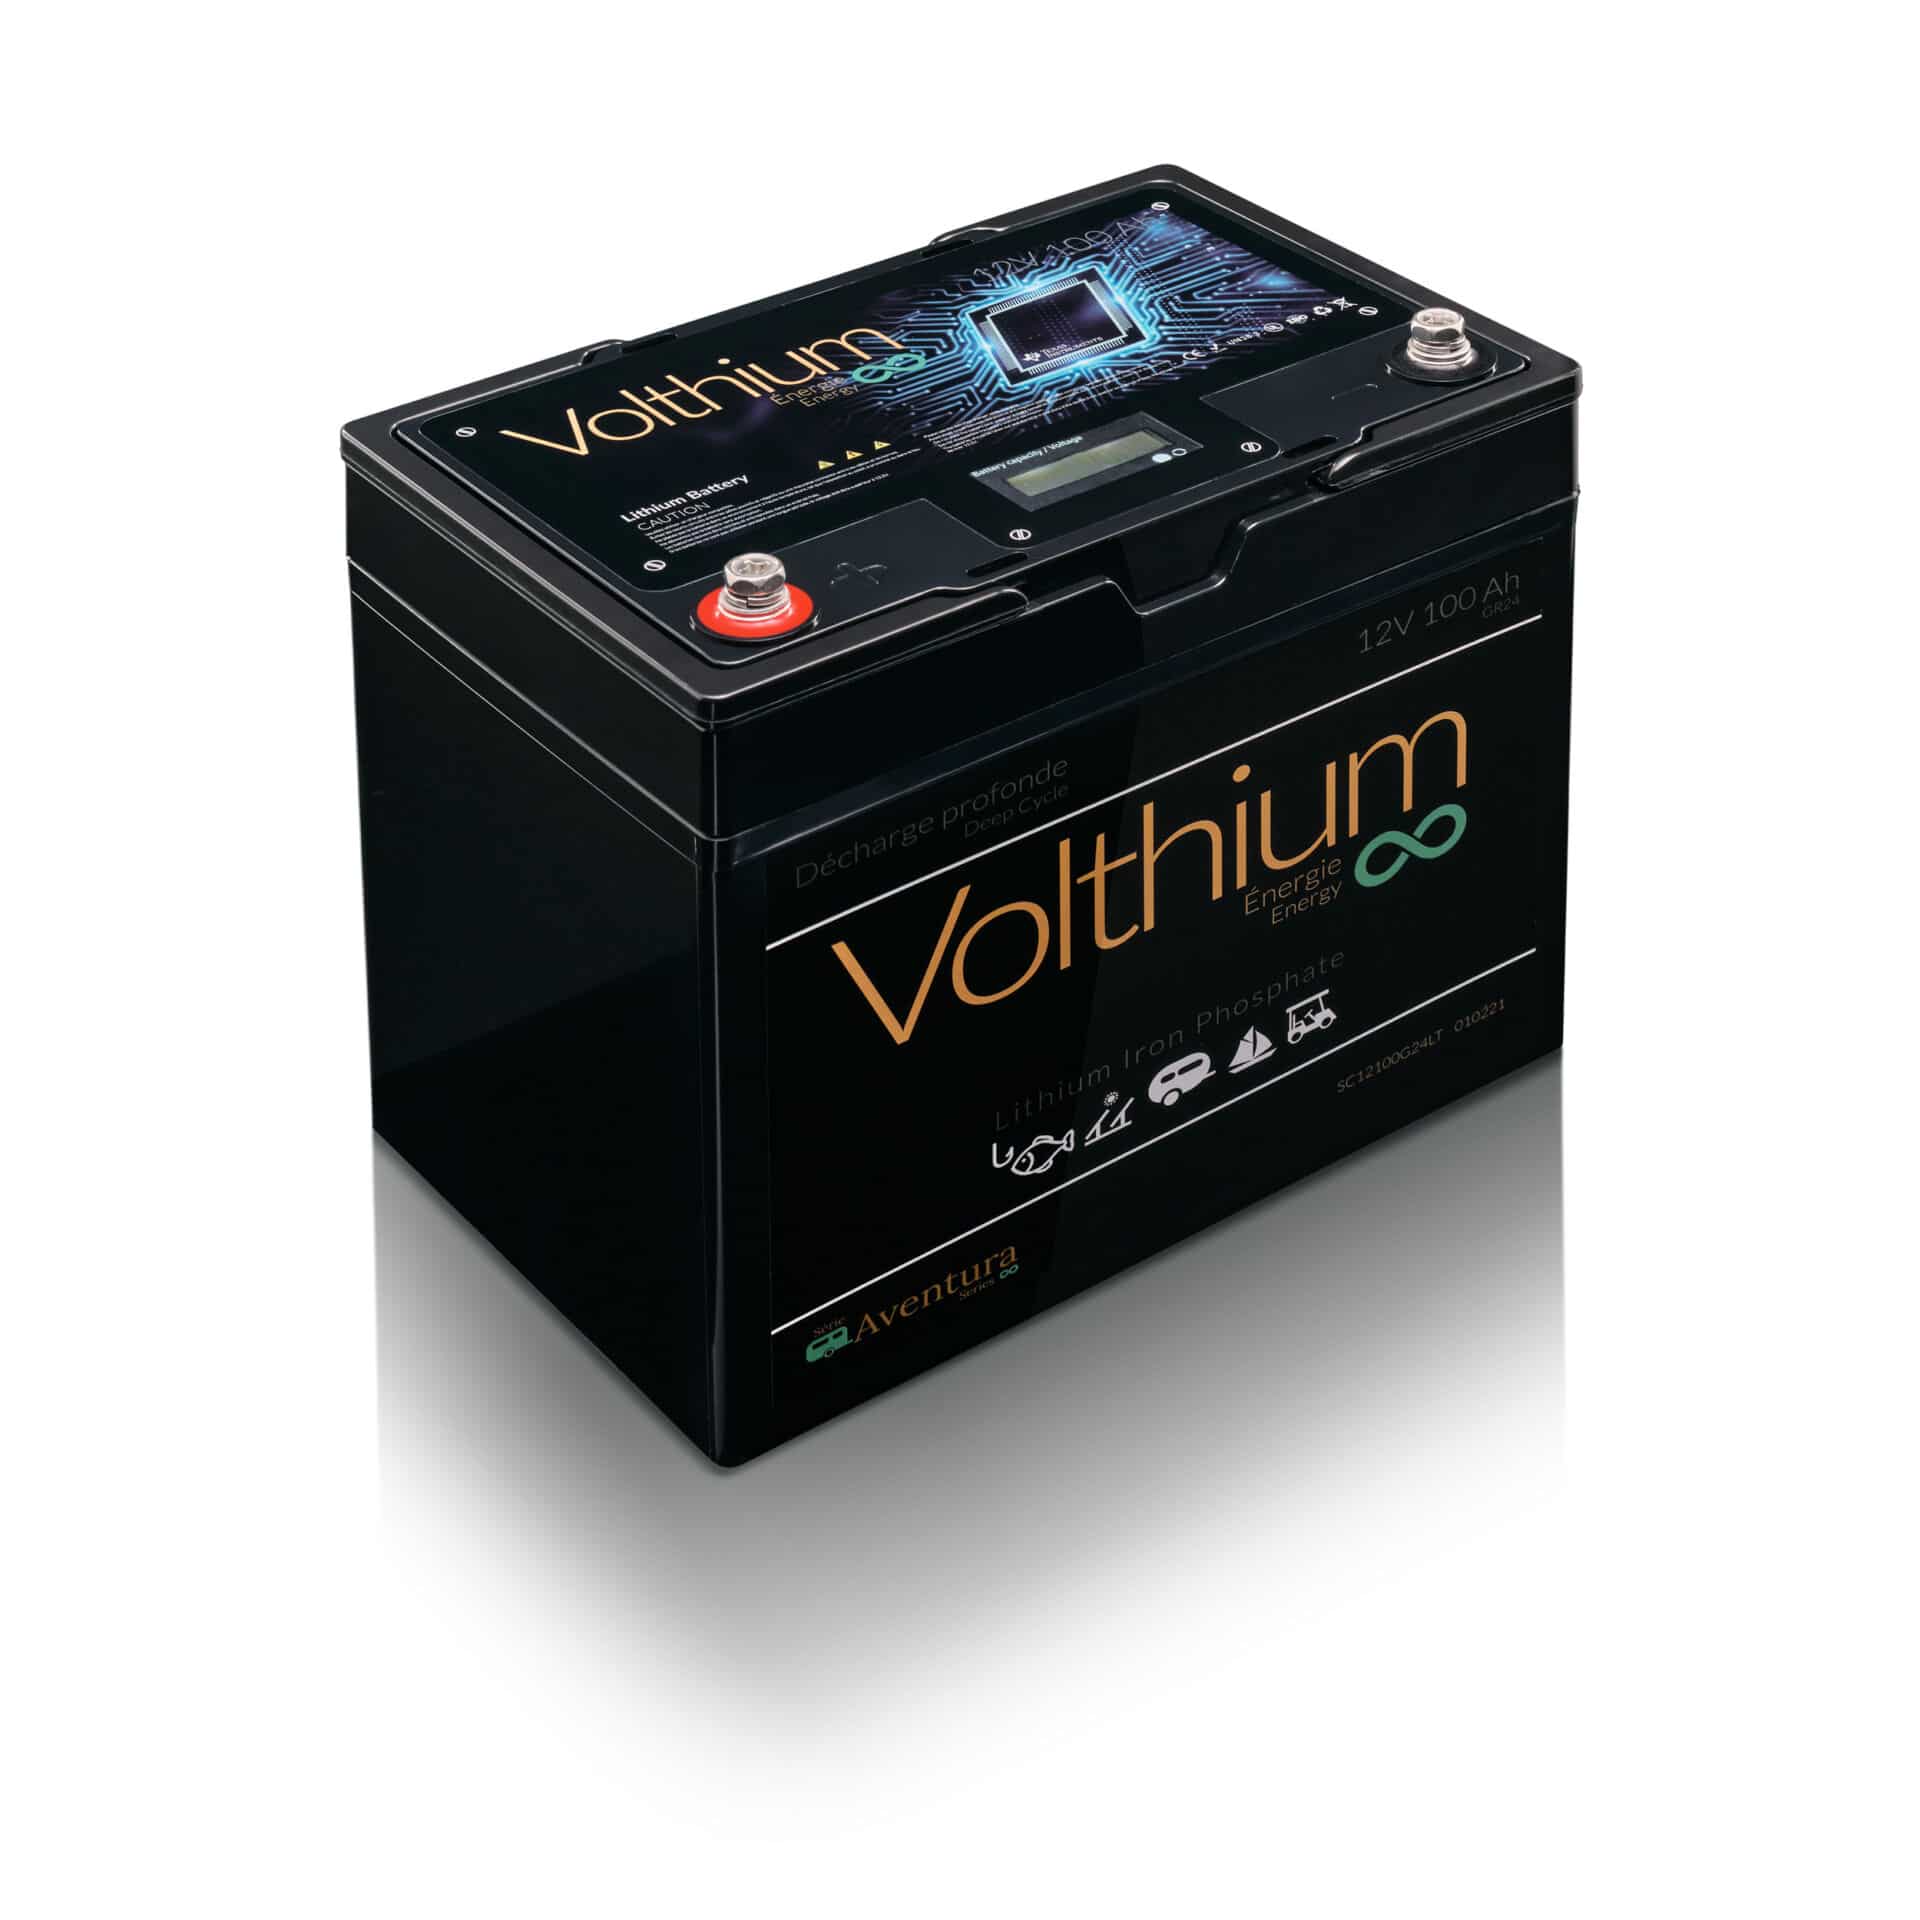 Batterie 12V 100AH - Protection contre la charge au froid - Volthium